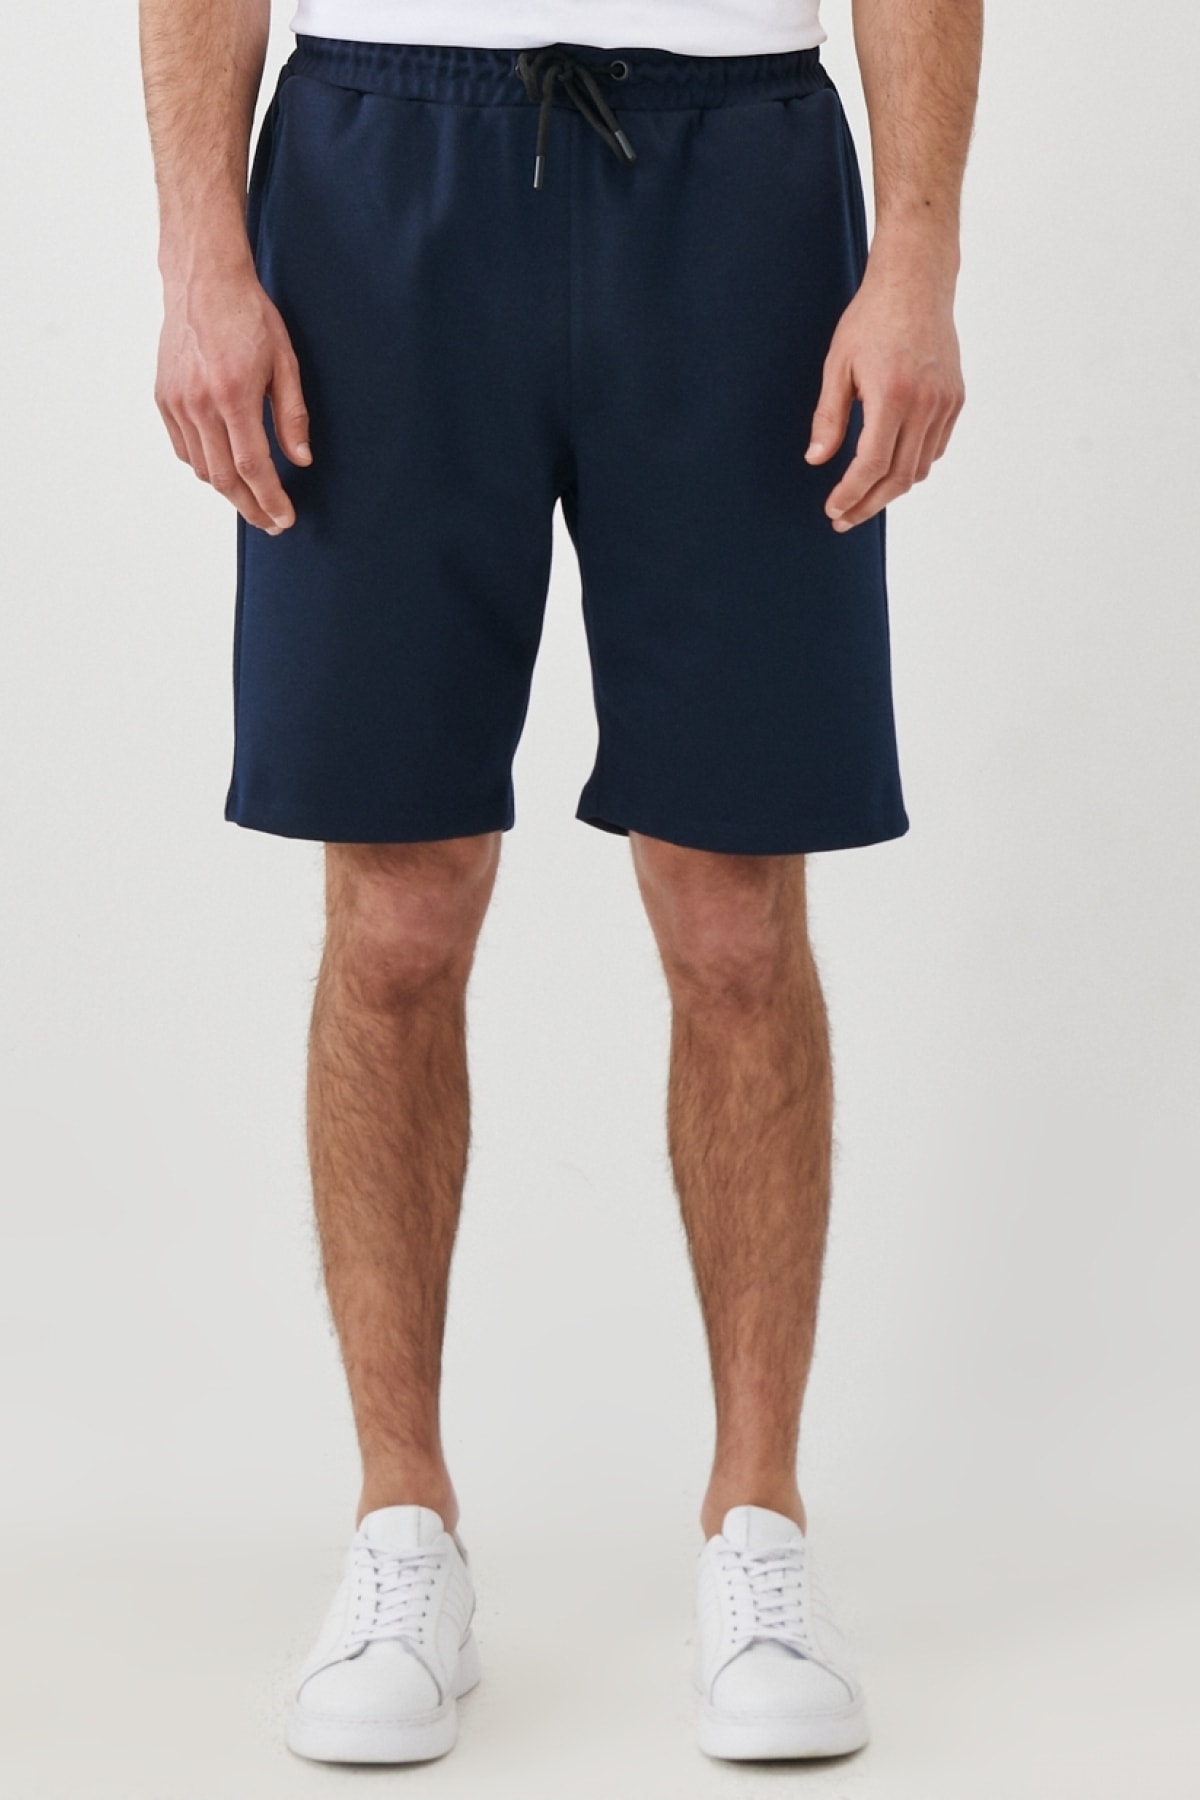 Levně AC&Co / Altınyıldız Classics Men's Navy Blue Standard Fit Daily Casual Sports Knitted Shorts.